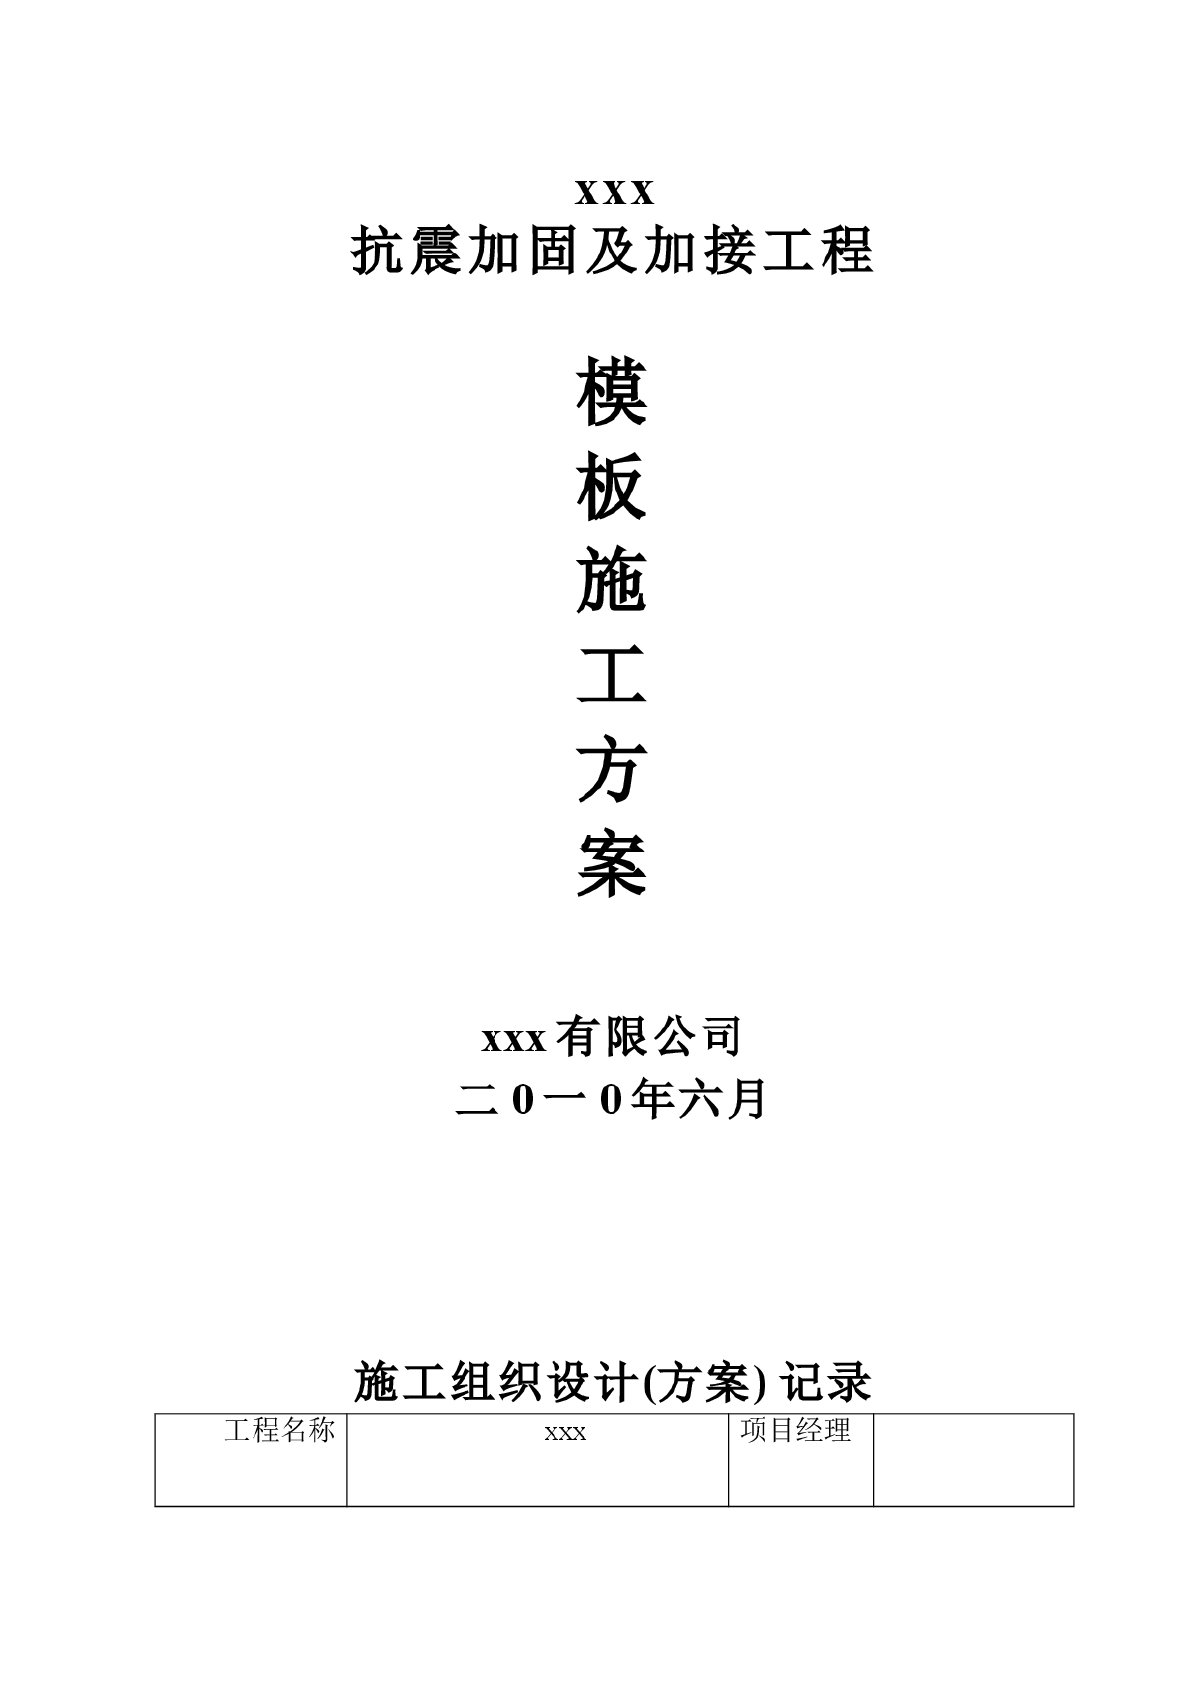 【芜湖】清水小学抗震加固及加接工程模板施工方案